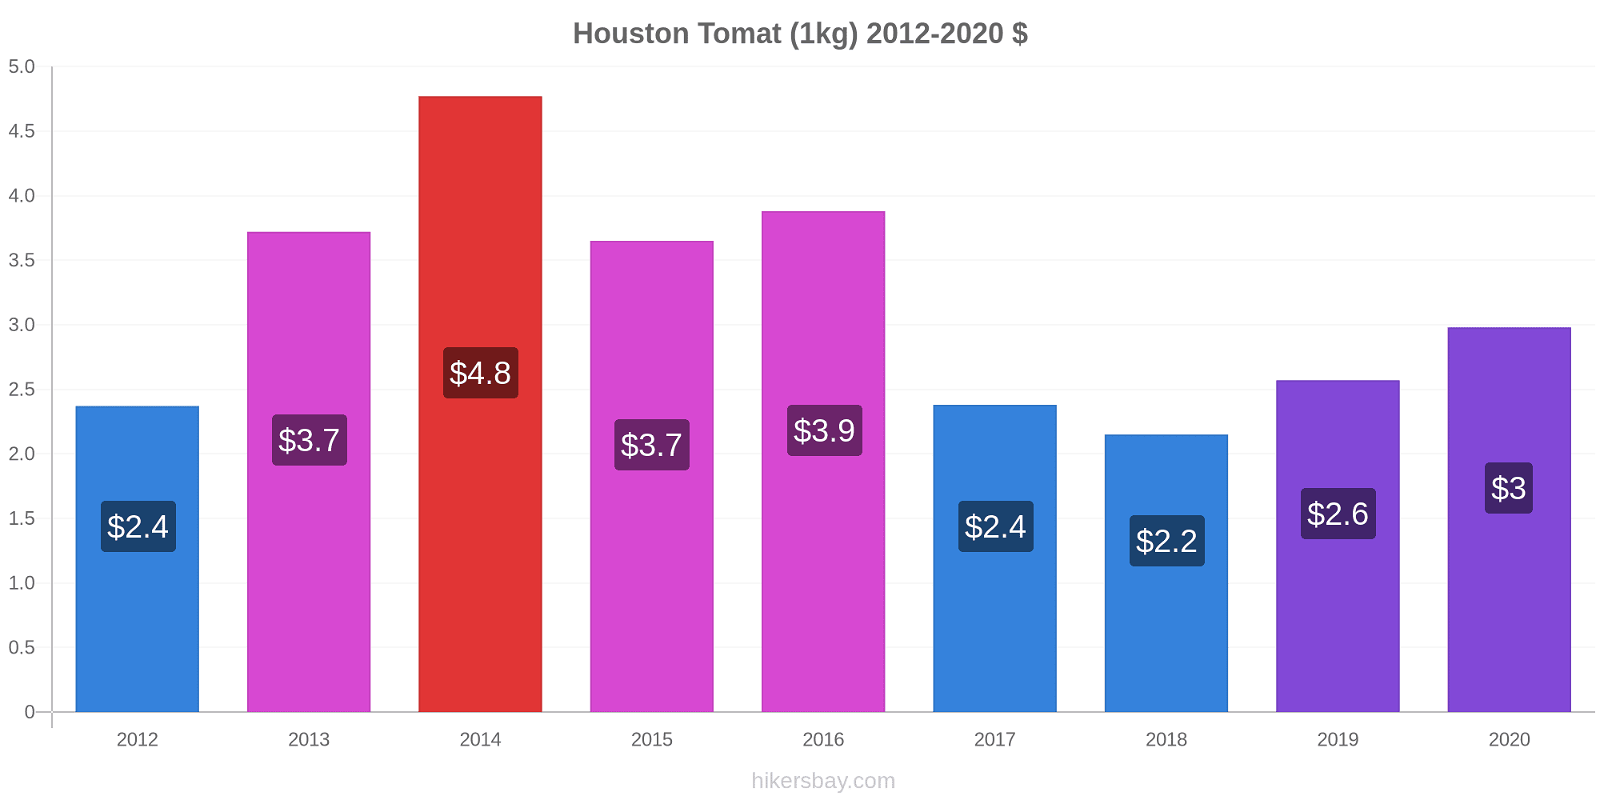 Houston prisförändringar Tomat (1kg) hikersbay.com